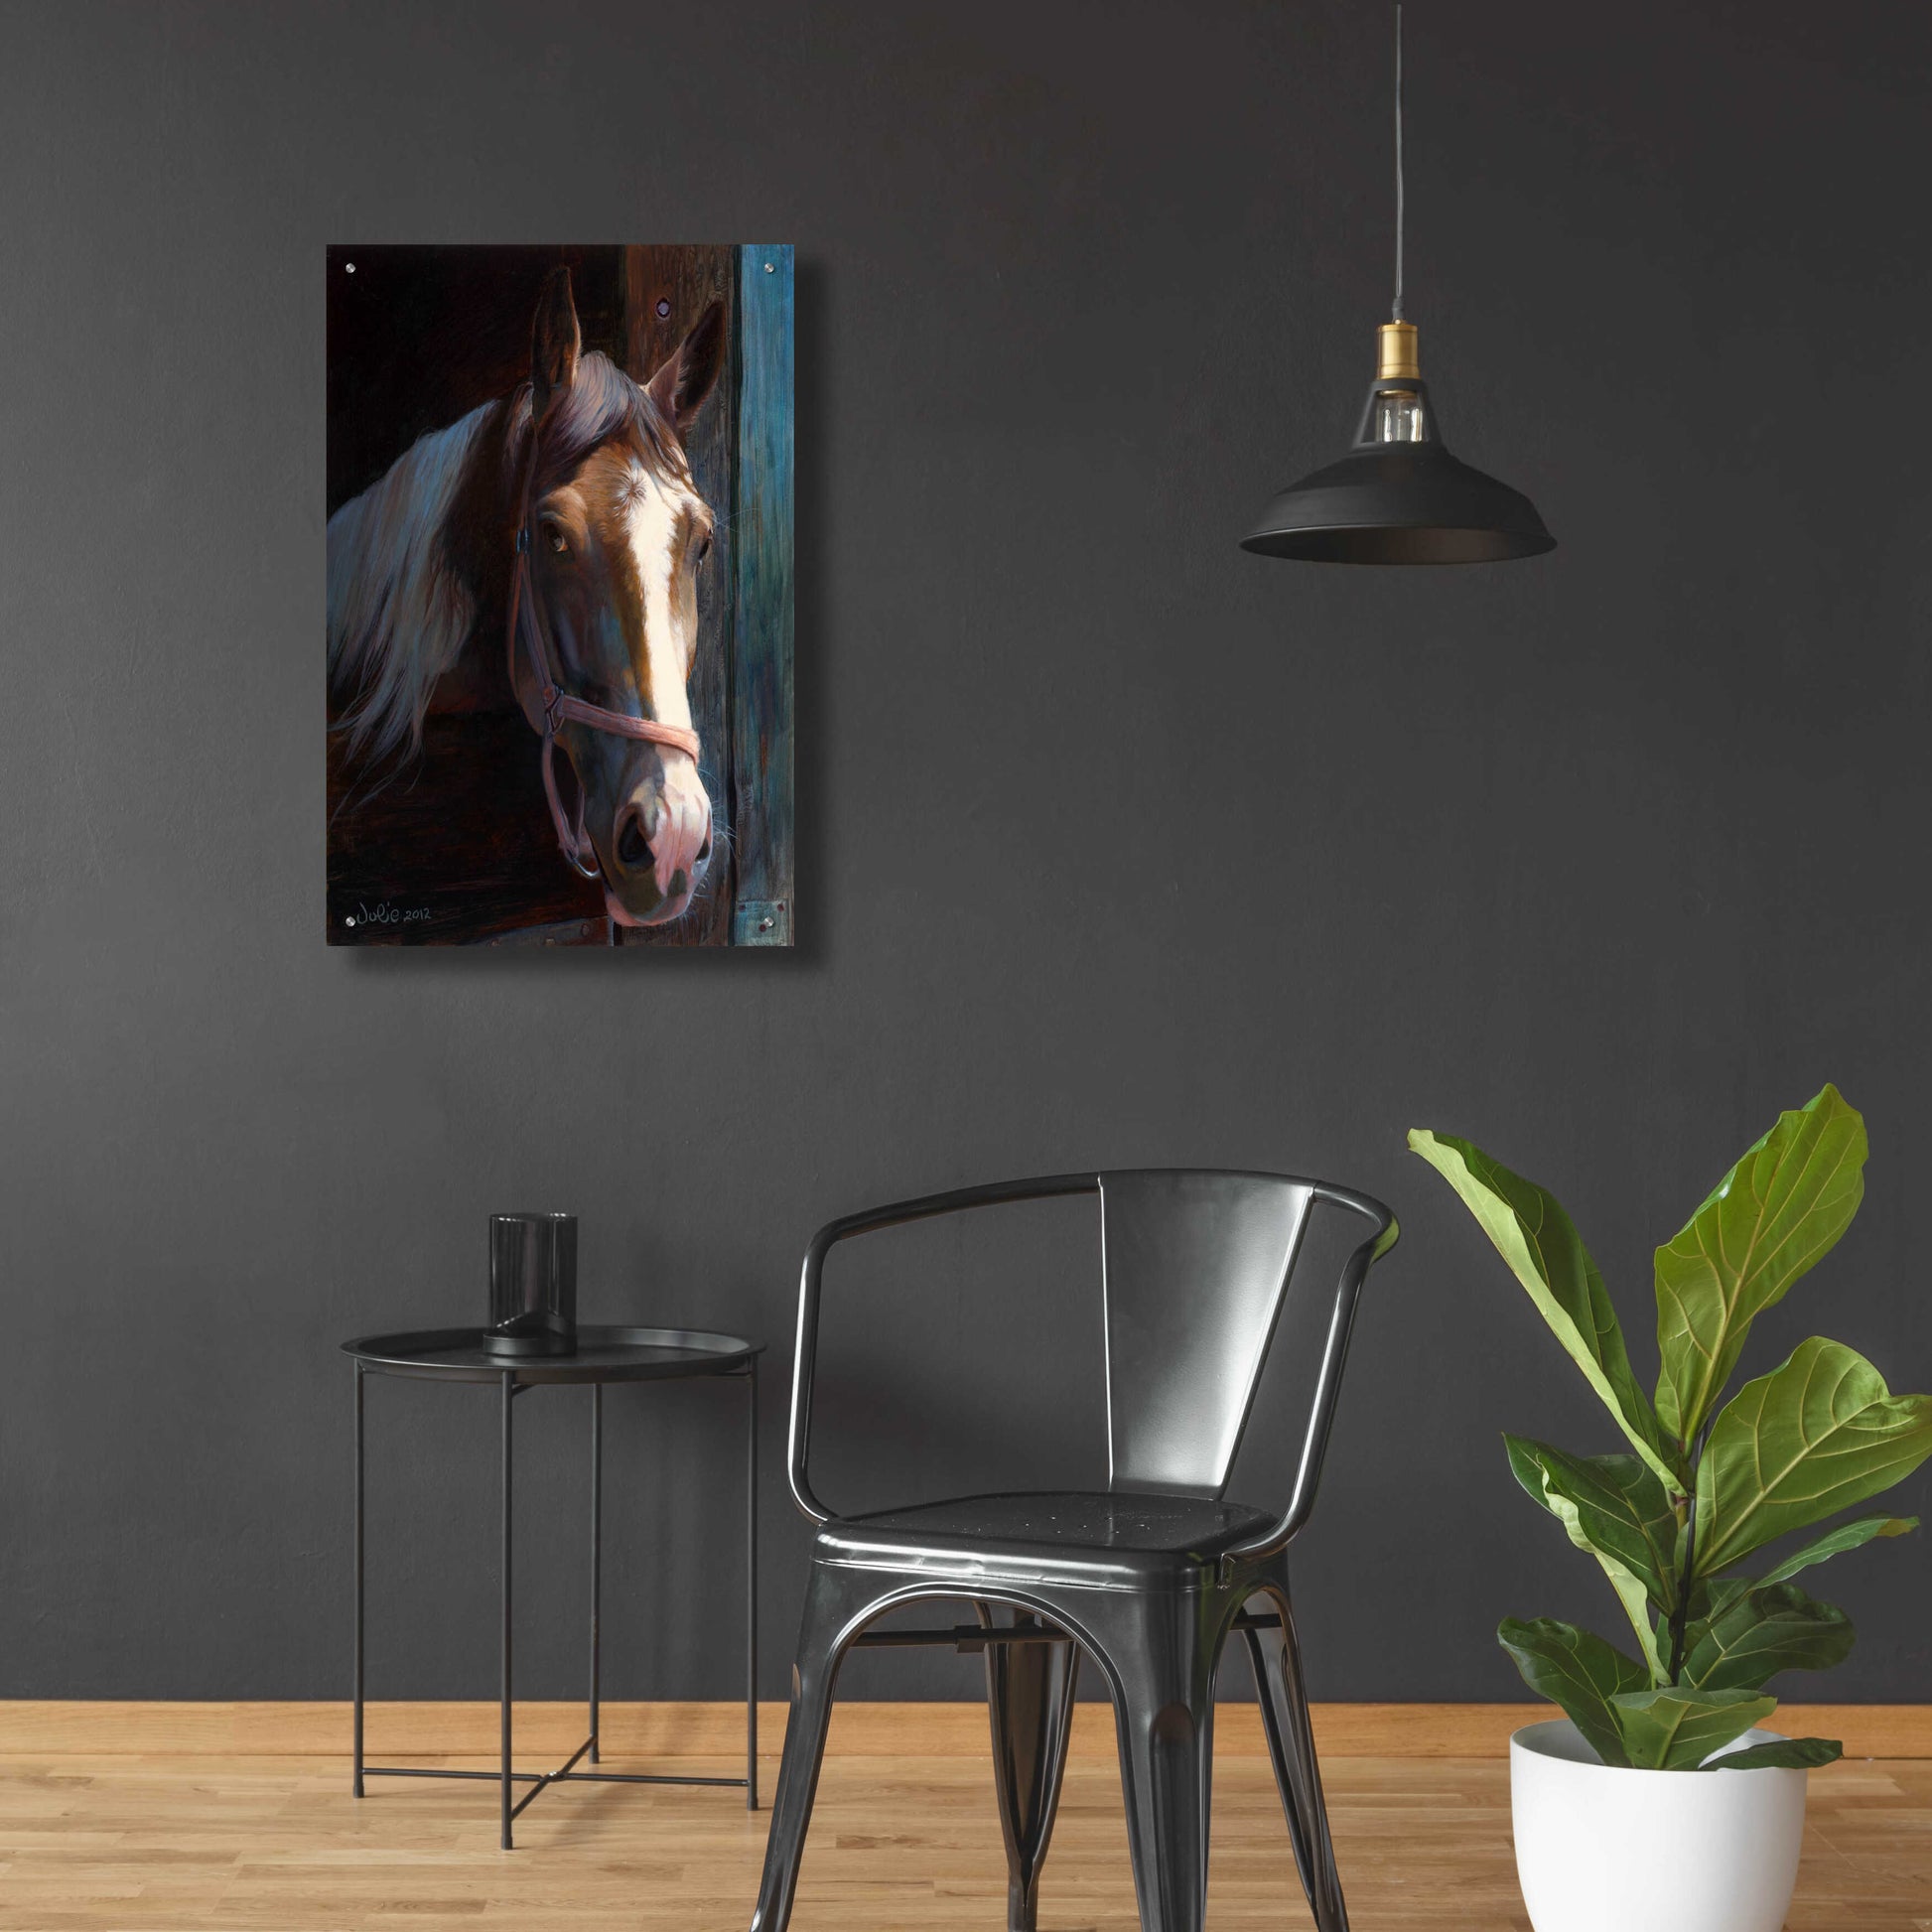 Epic Art 'Dark Horse' by Julie Bel, Acrylic Glass Wall Art,24x36